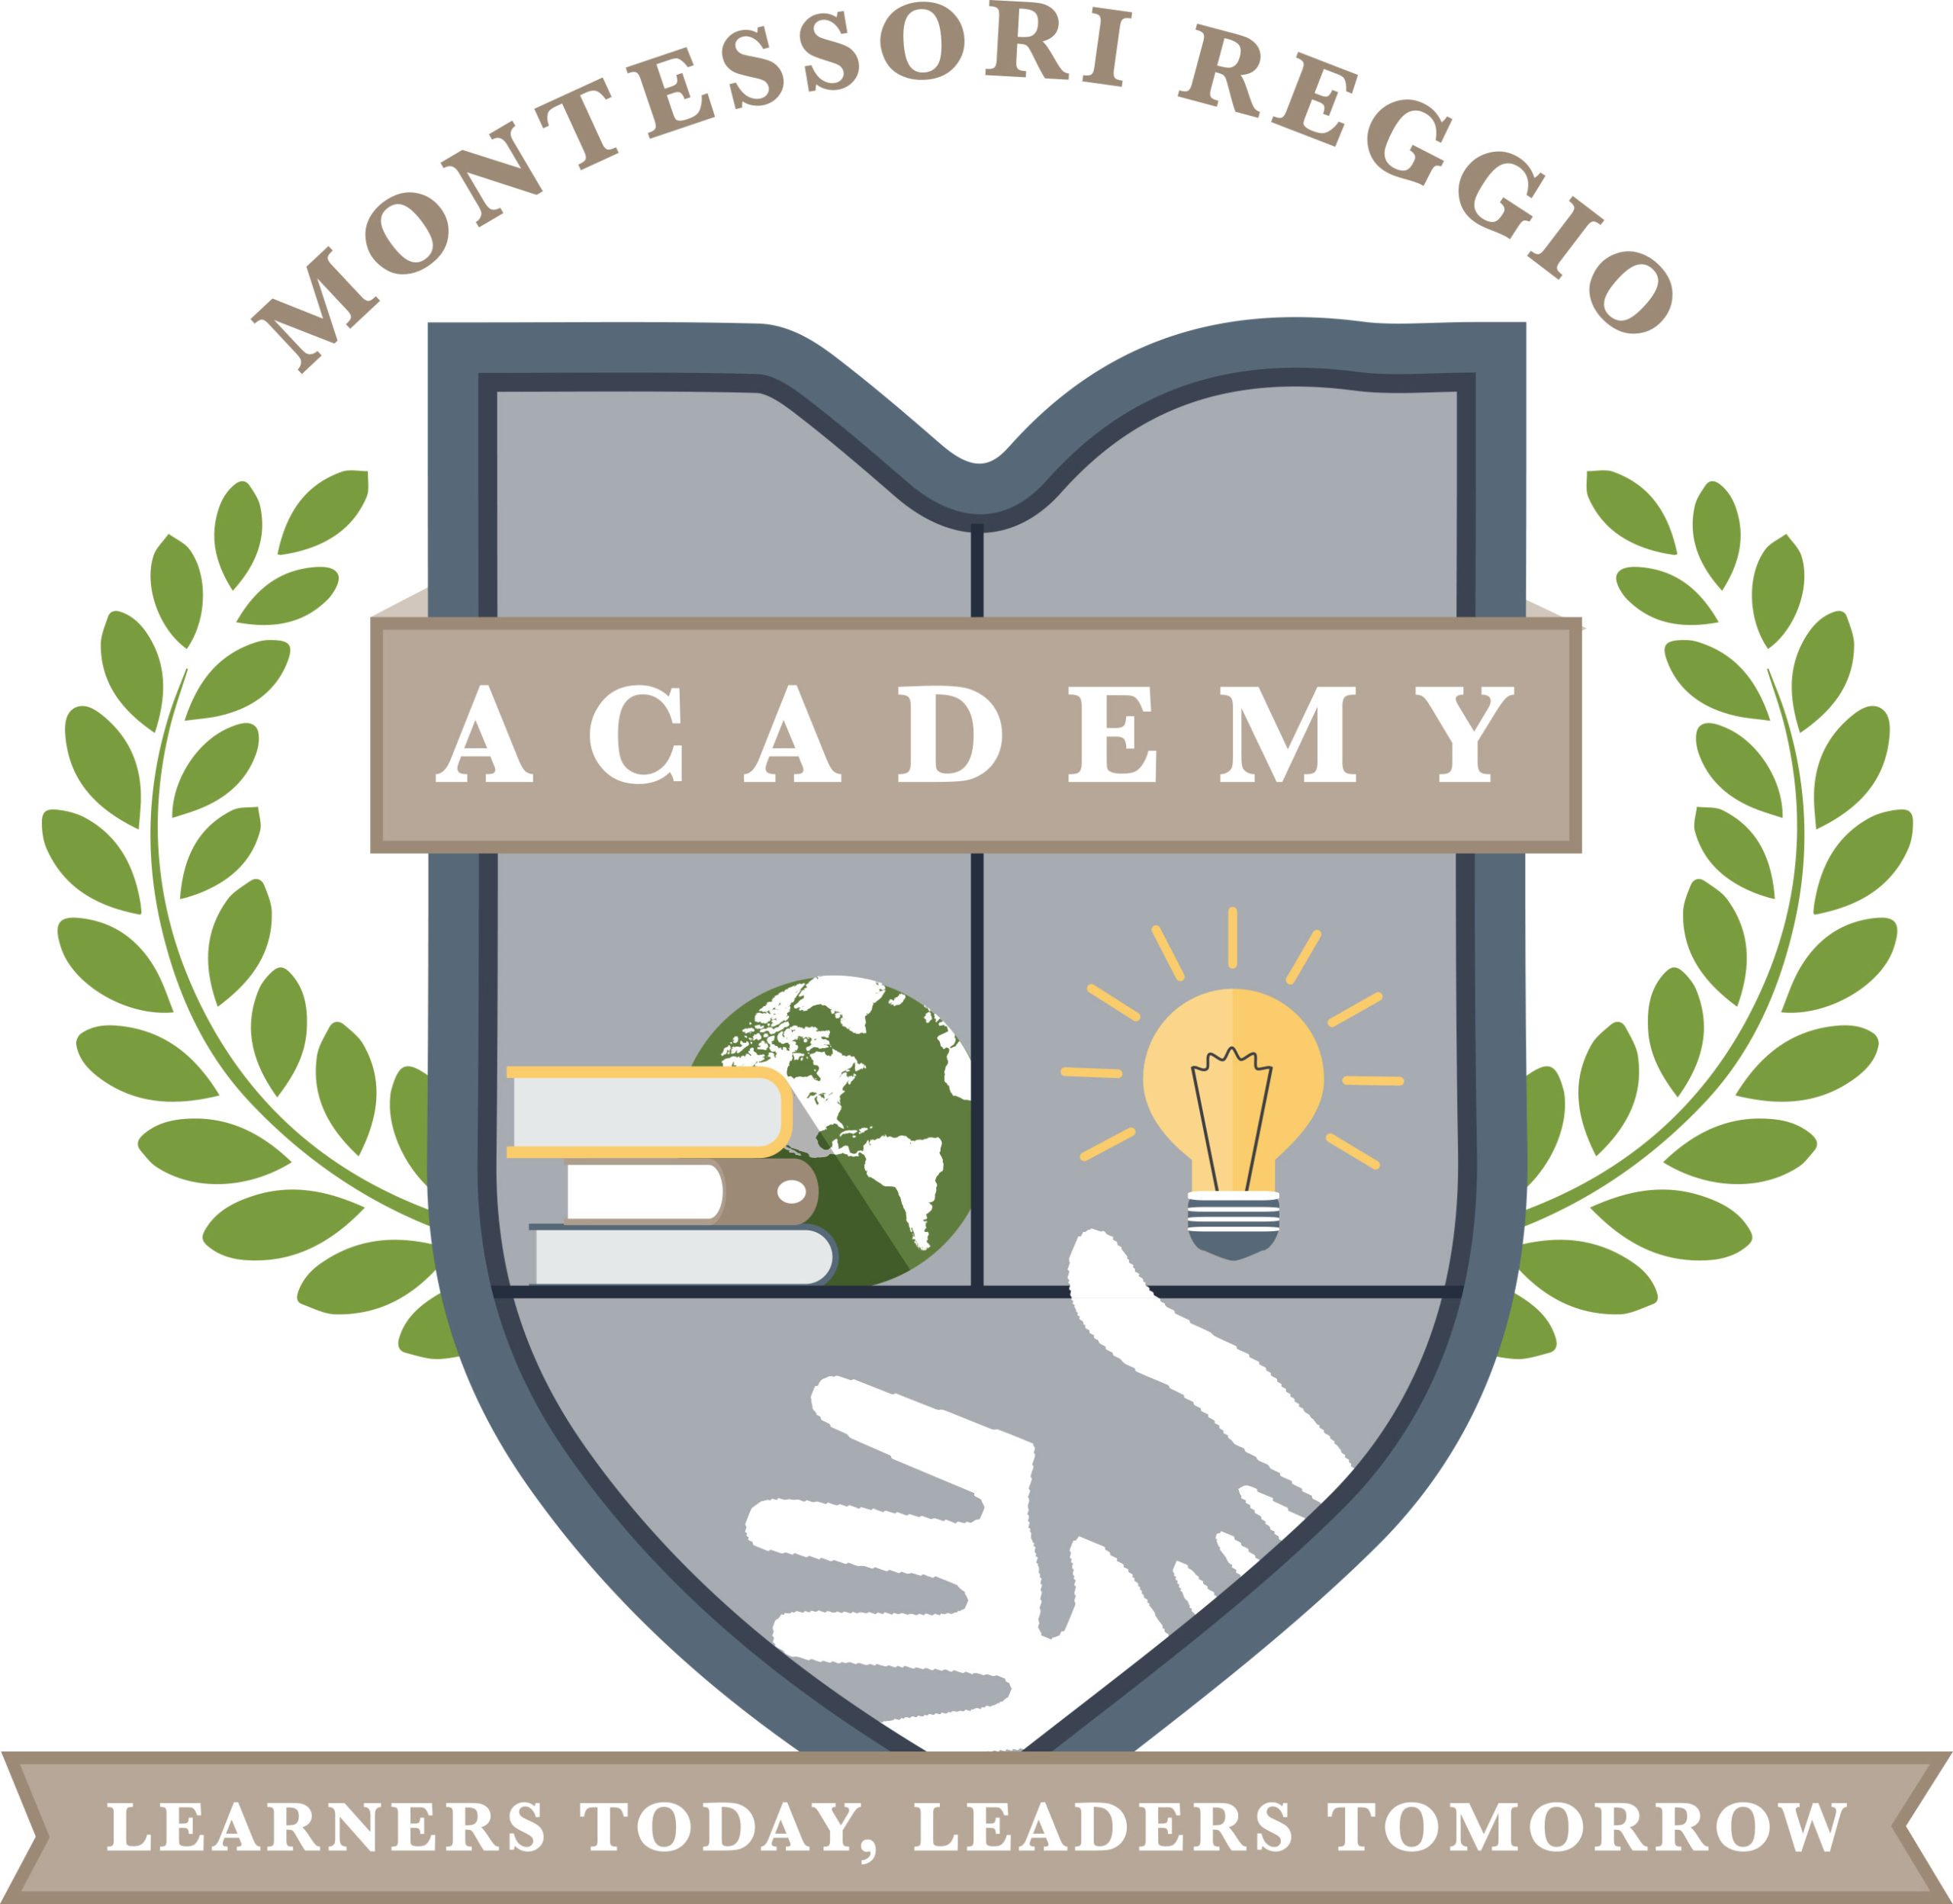 Check out Montessori Reggio Academy